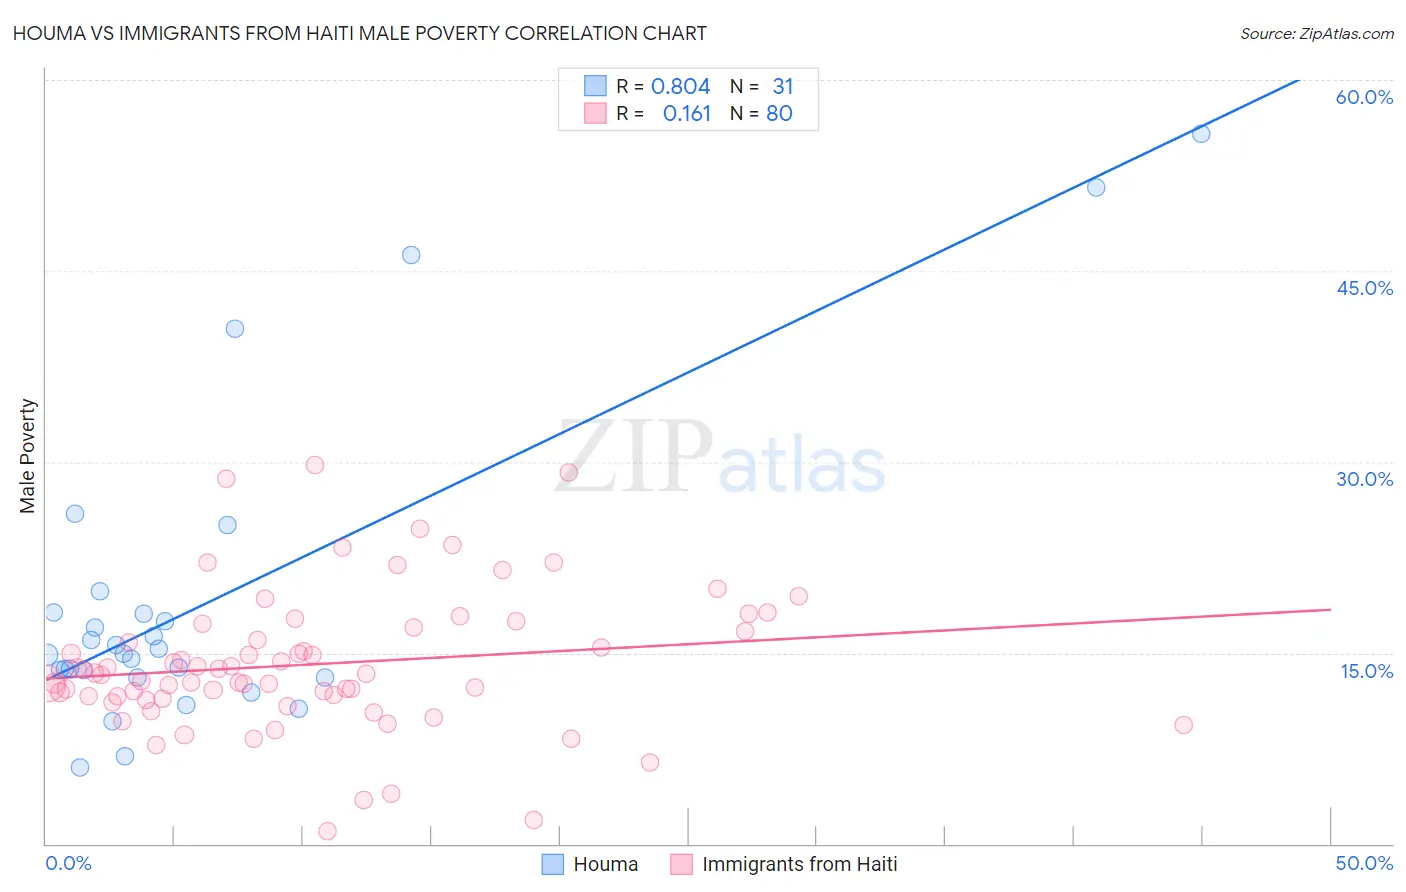 Houma vs Immigrants from Haiti Male Poverty